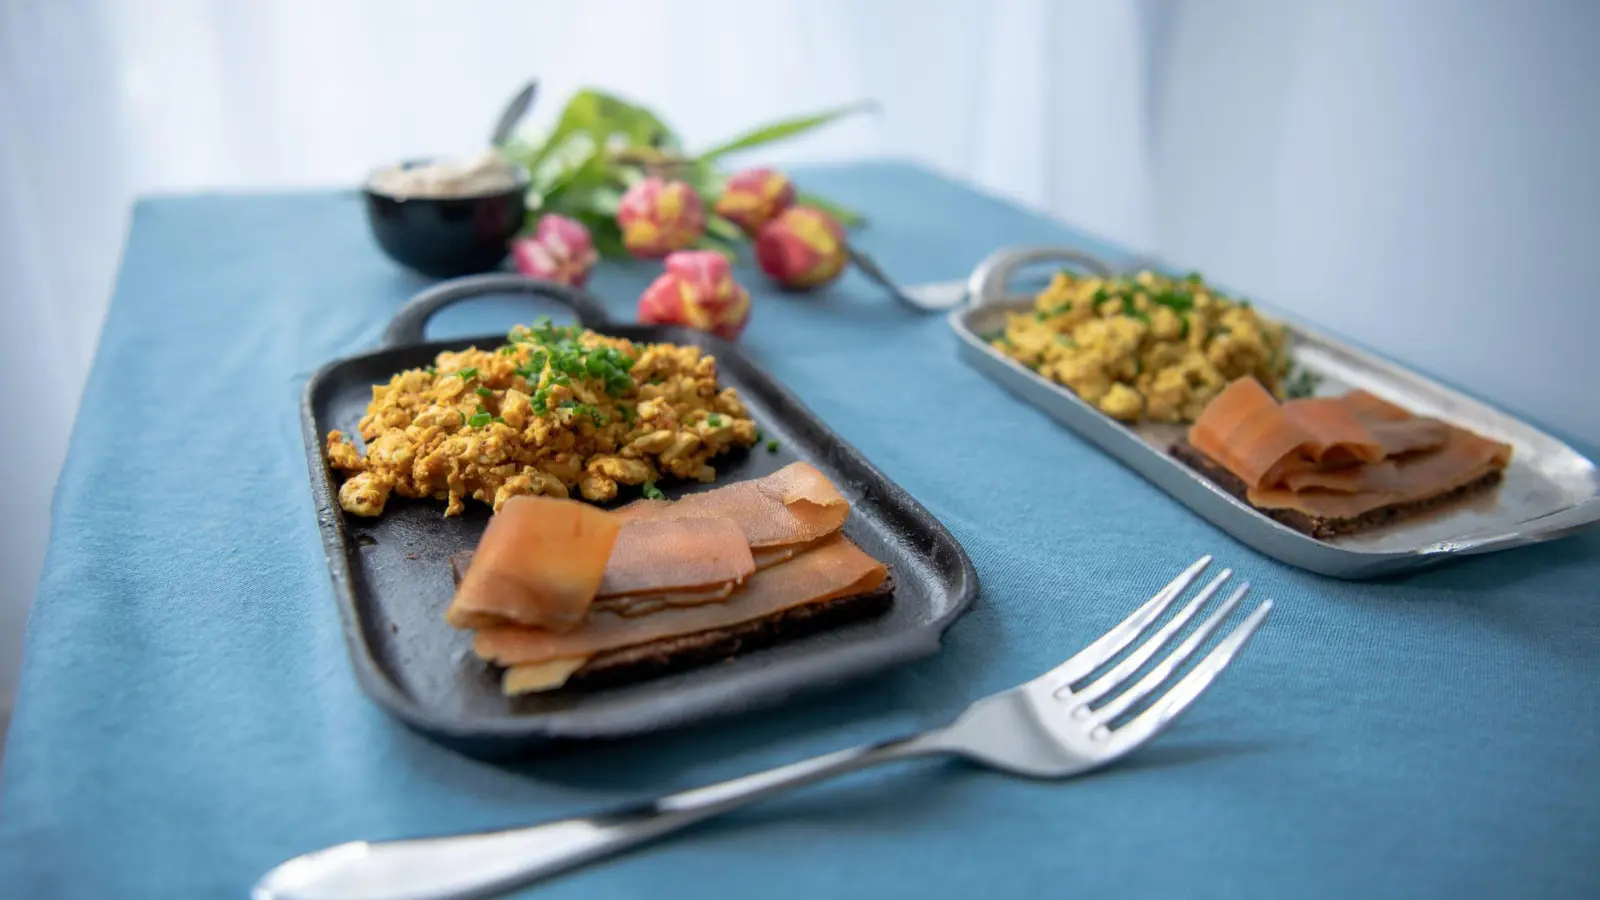 Die Frühstücksklassiker Rührei und Lachs lassen sich ganz einfach in vegan mit Hilfe von Tofu und Karotten zubereiten. (Foto: Laura Ludwig/dpa-tmn)